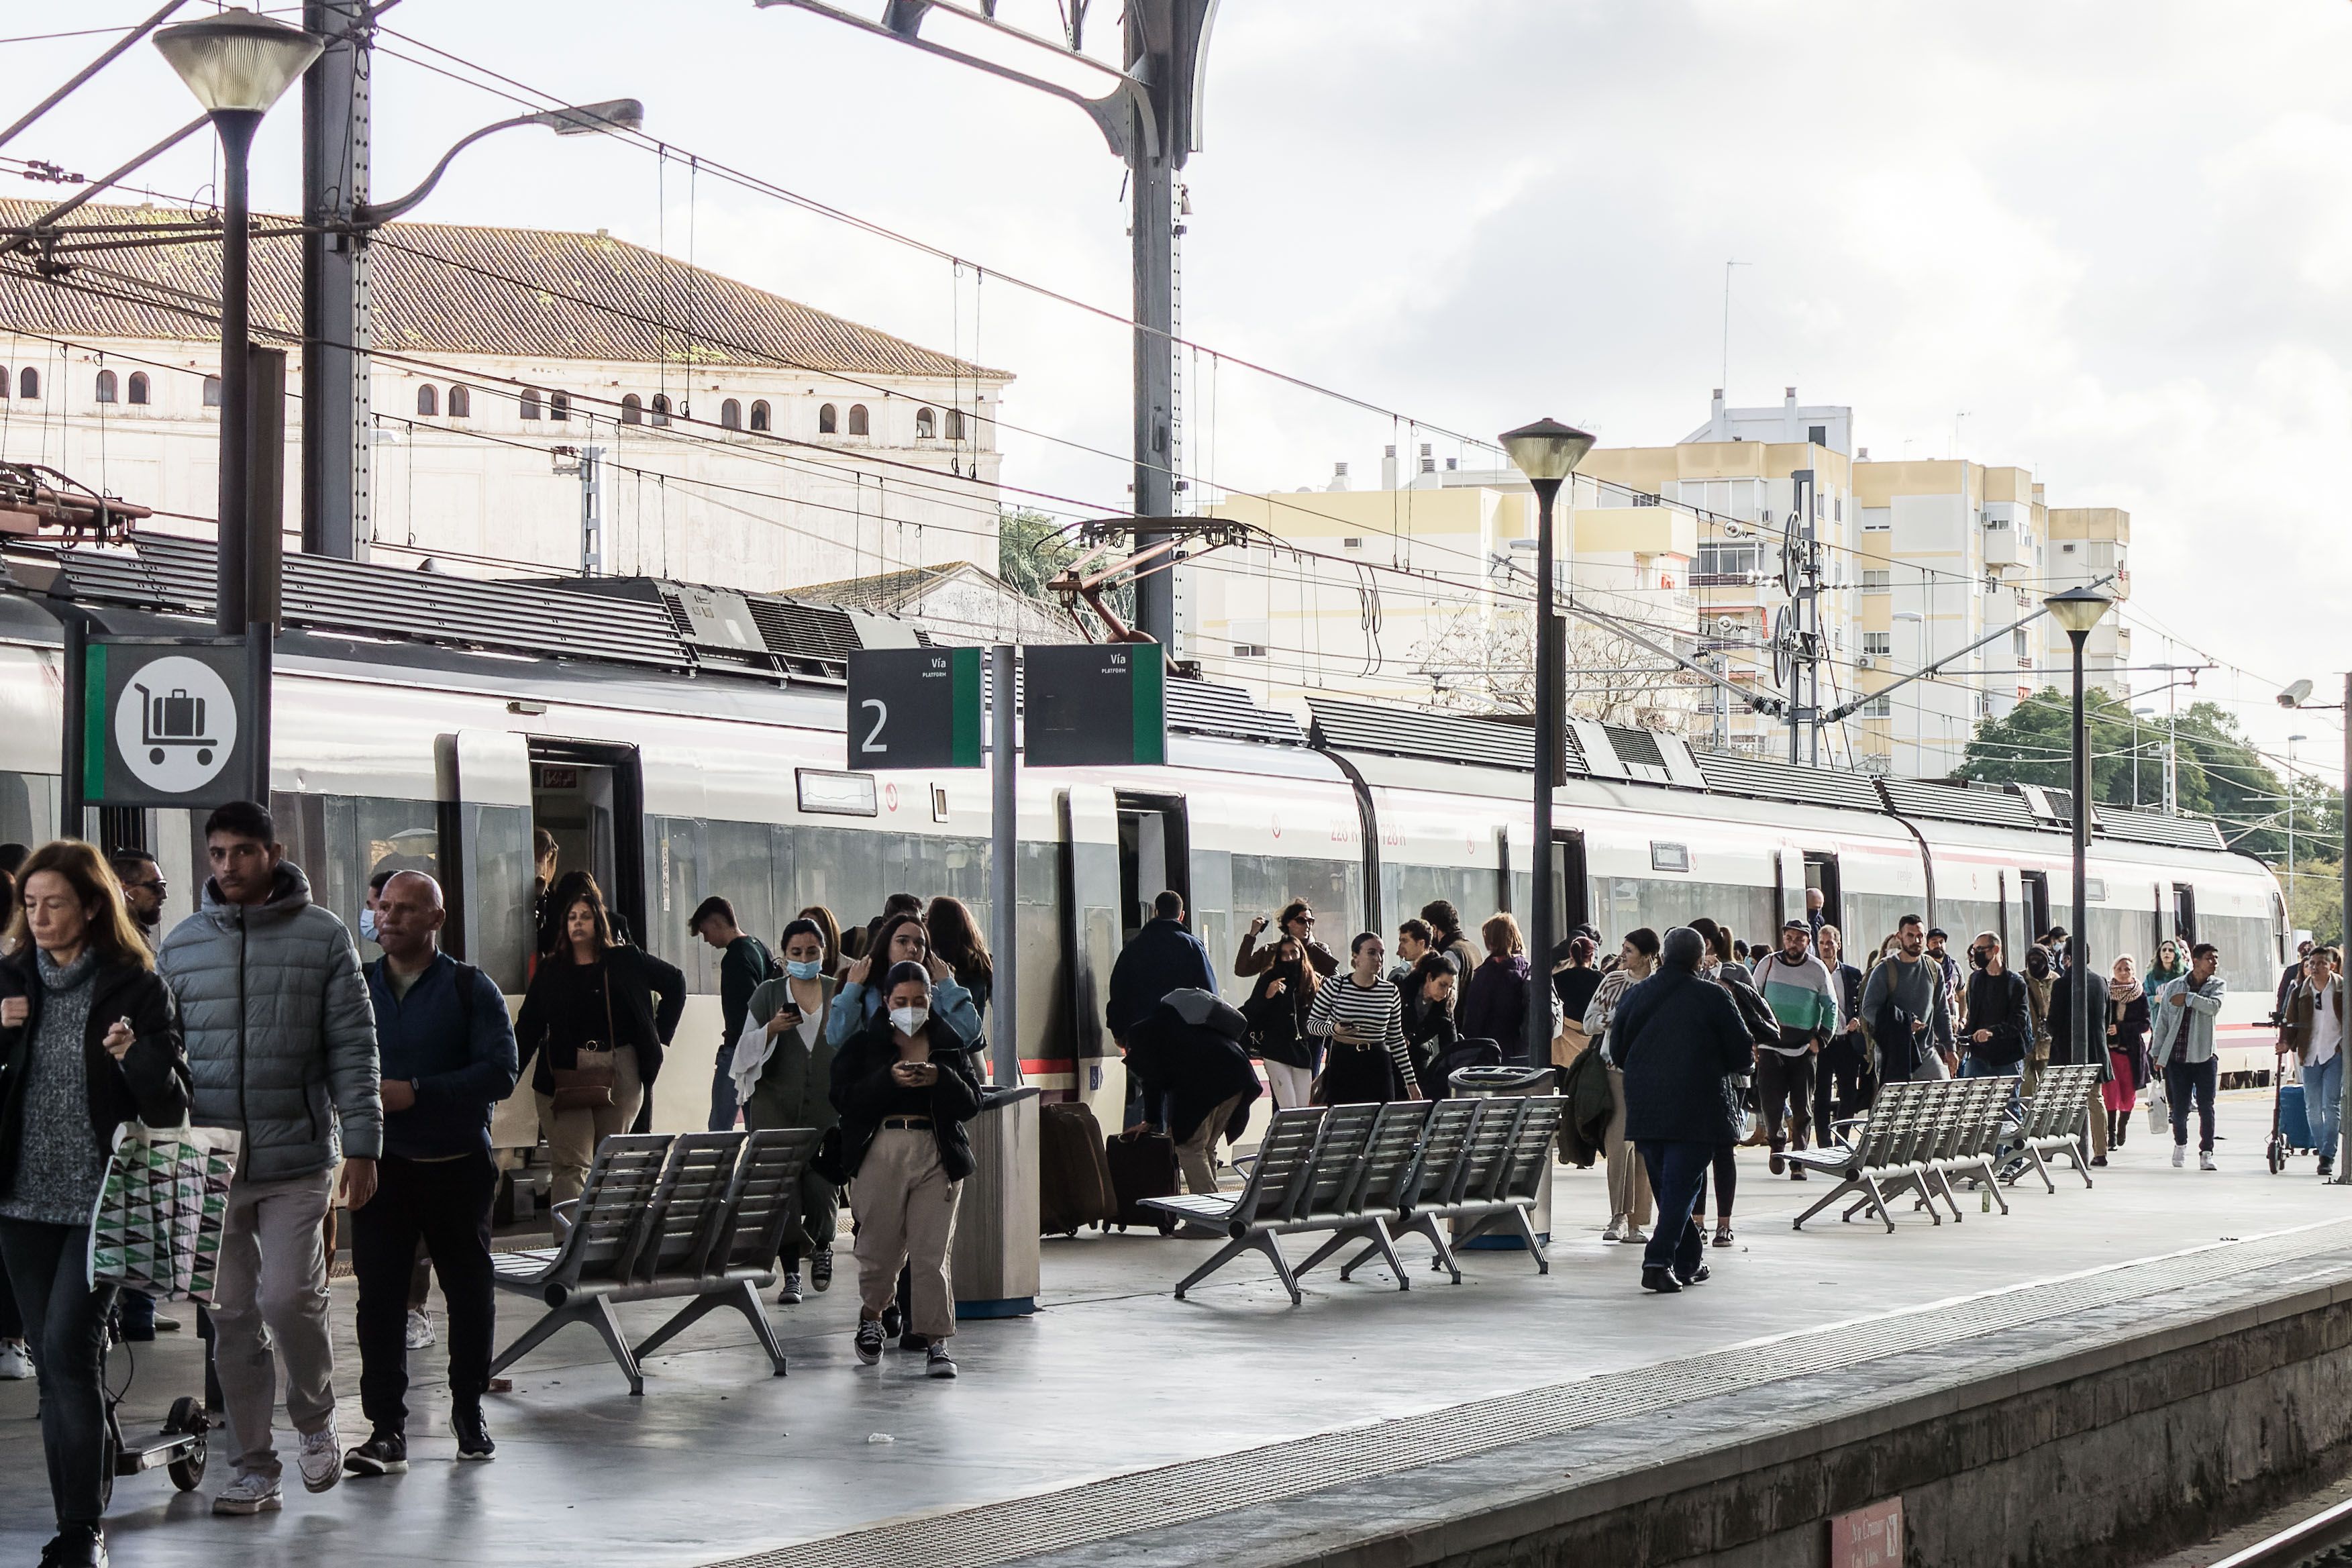 Oferta de empleos en Renfe: contratos indefinidos sin tener que opositar. Imagen de un tren en la estación de Jerez.